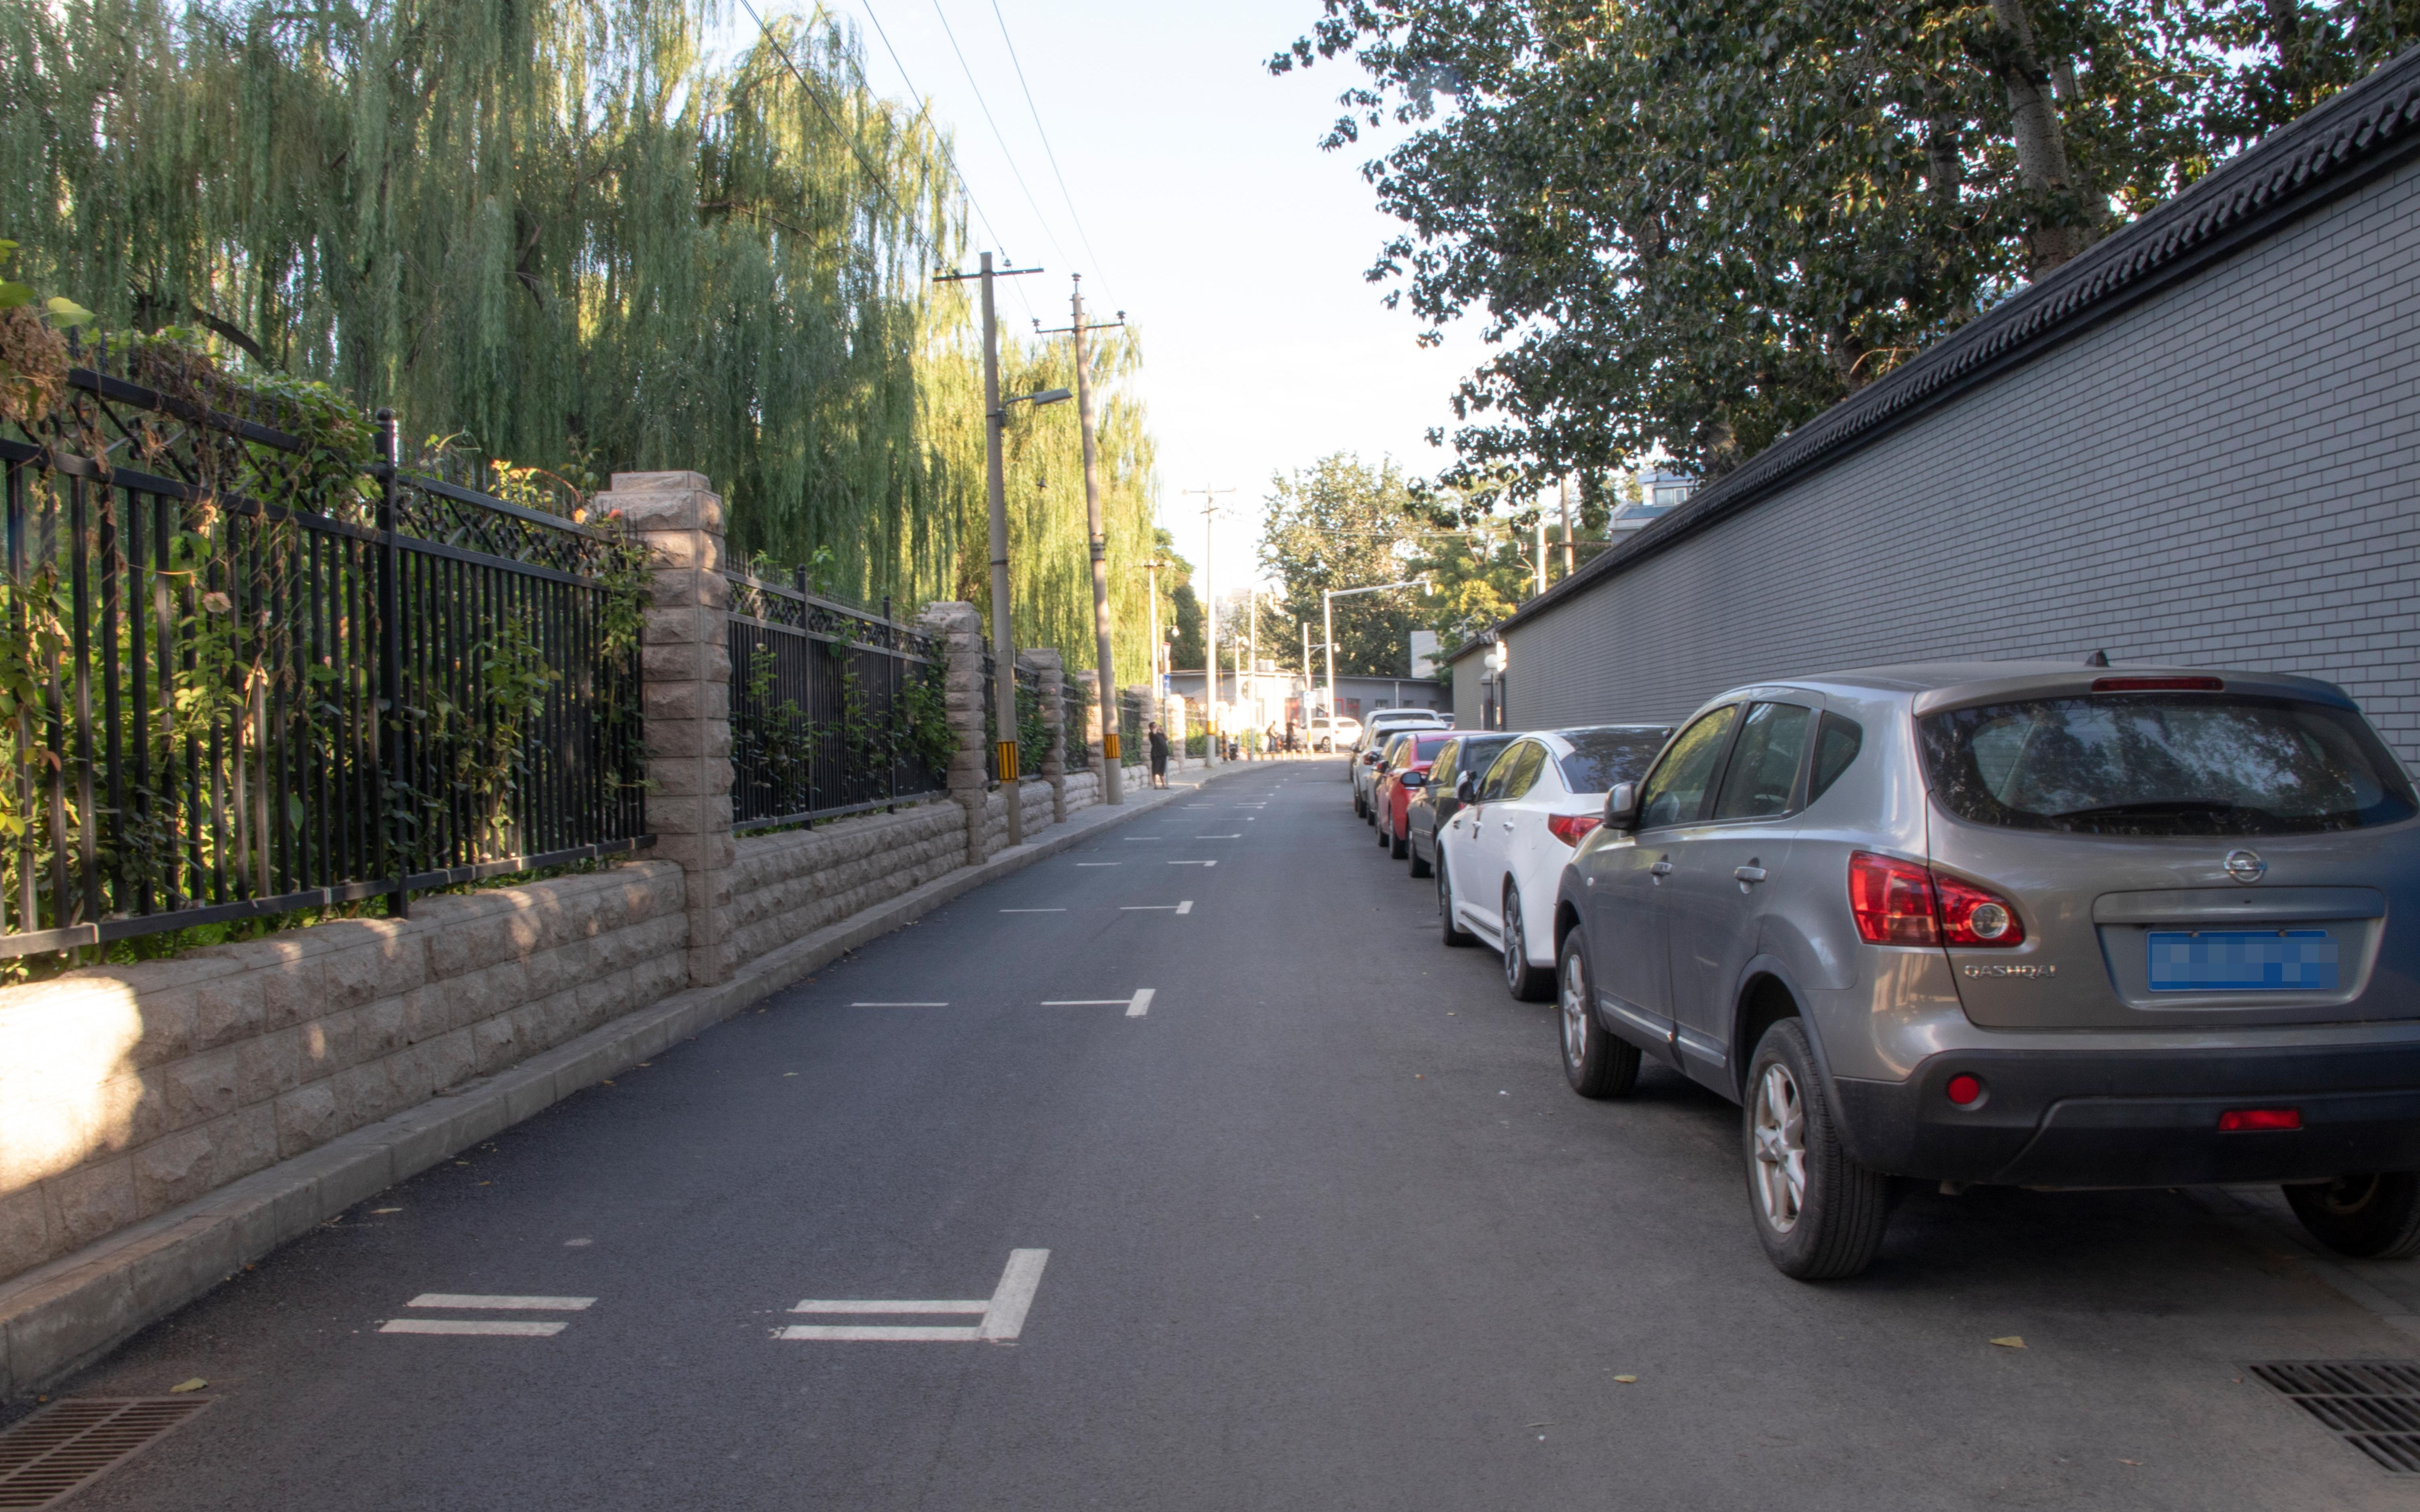 东城区长青园路虽施划了停车位,但多数车辆仍停在对侧路边